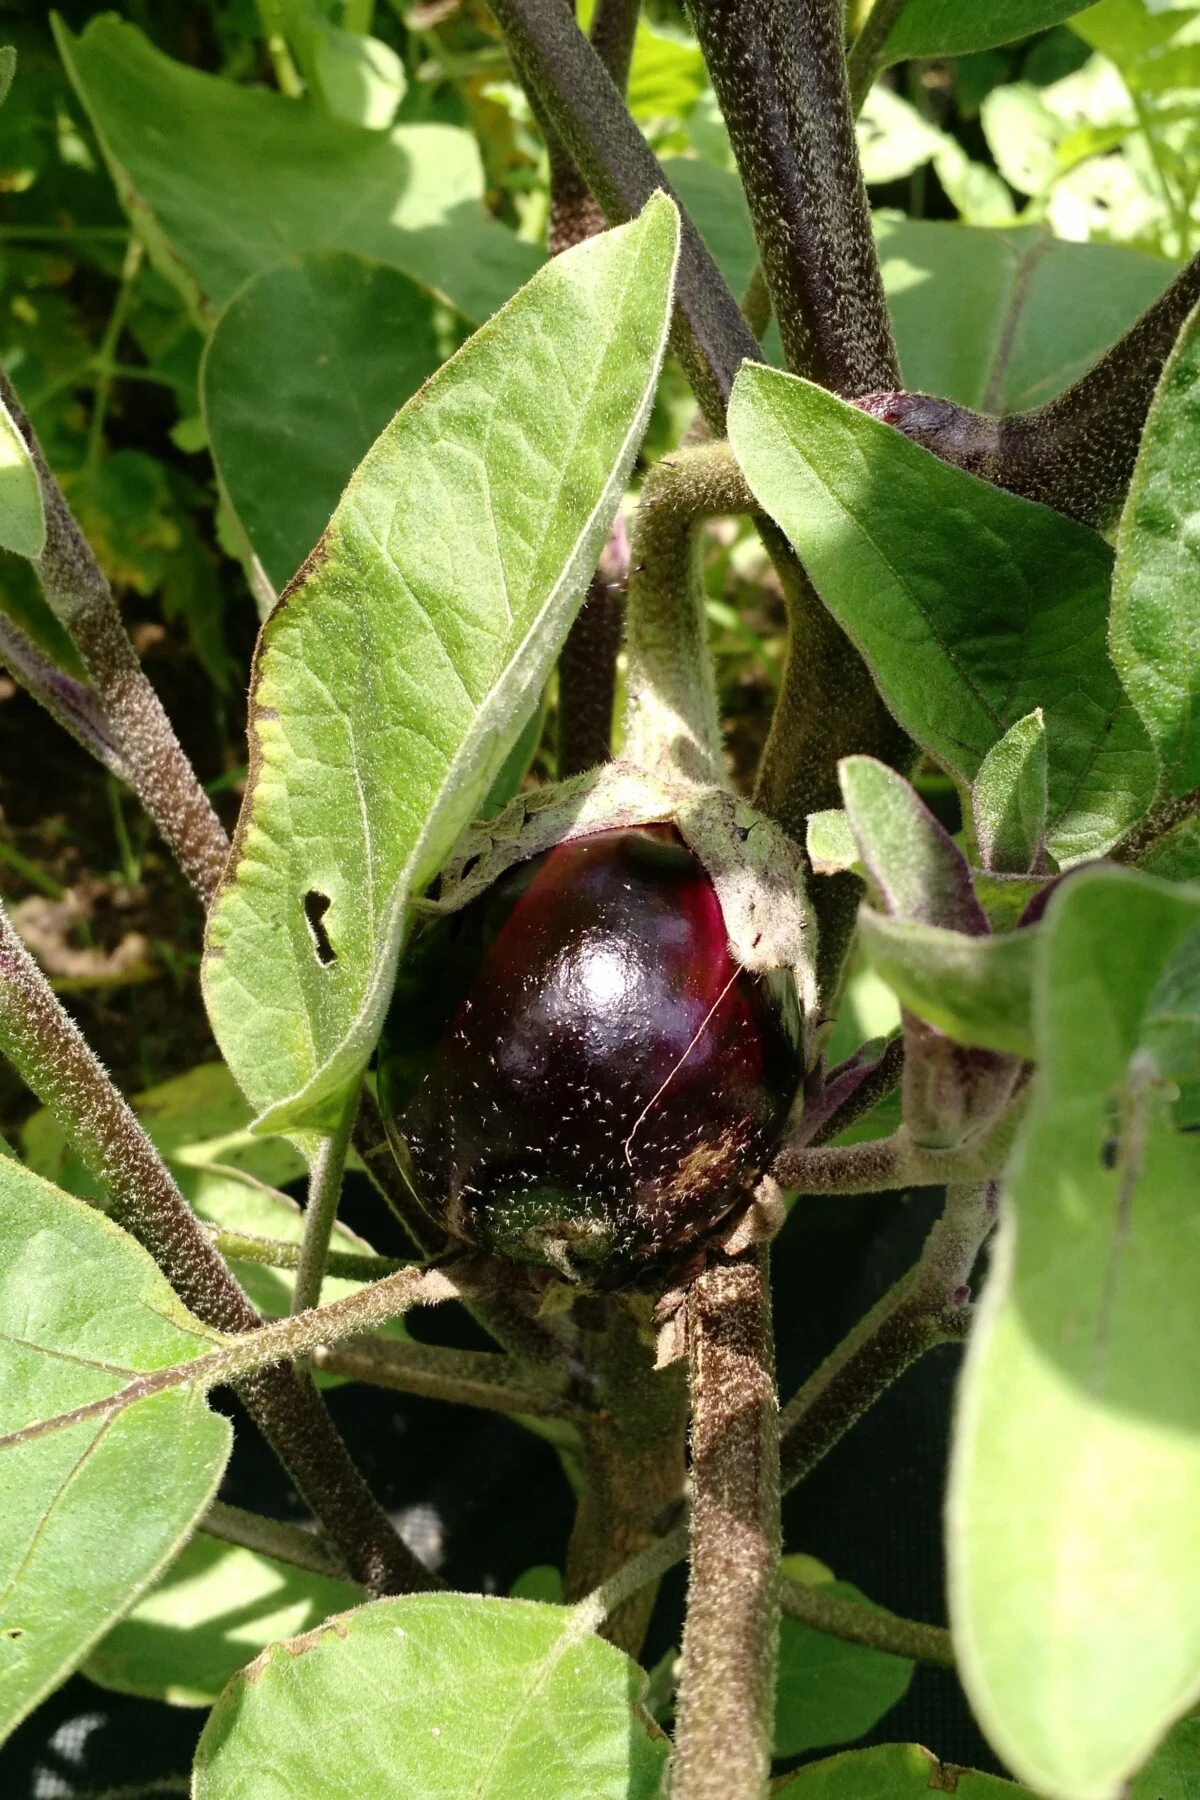 Eggplant growing